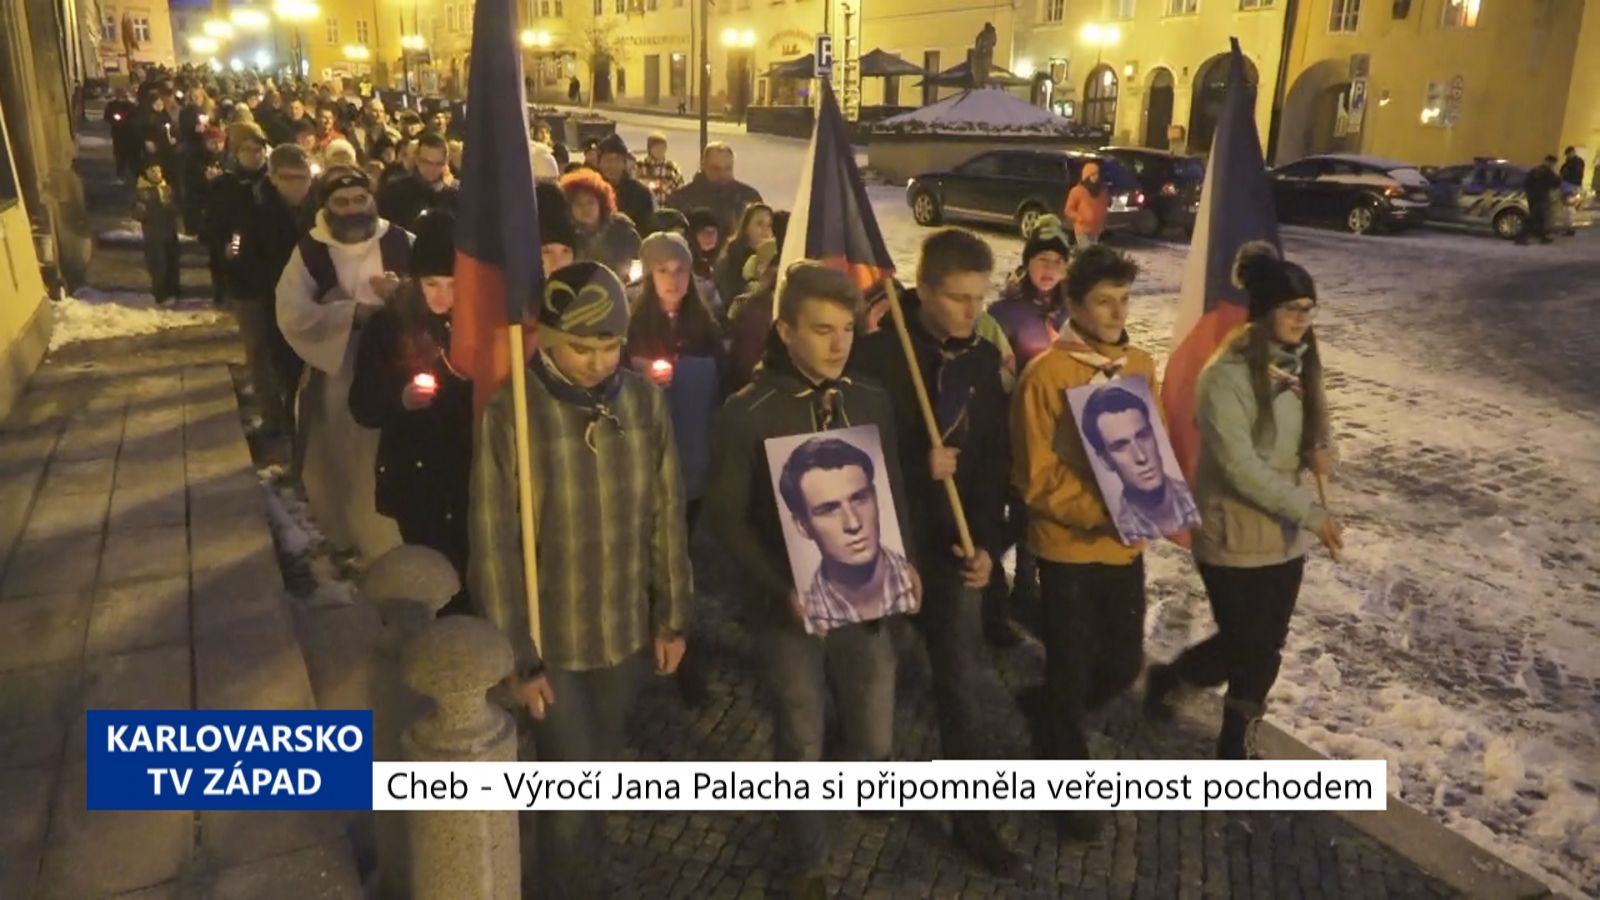 Cheb: Výročí Jana Palacha si připomněla veřejnost pochodem (TV Západ)